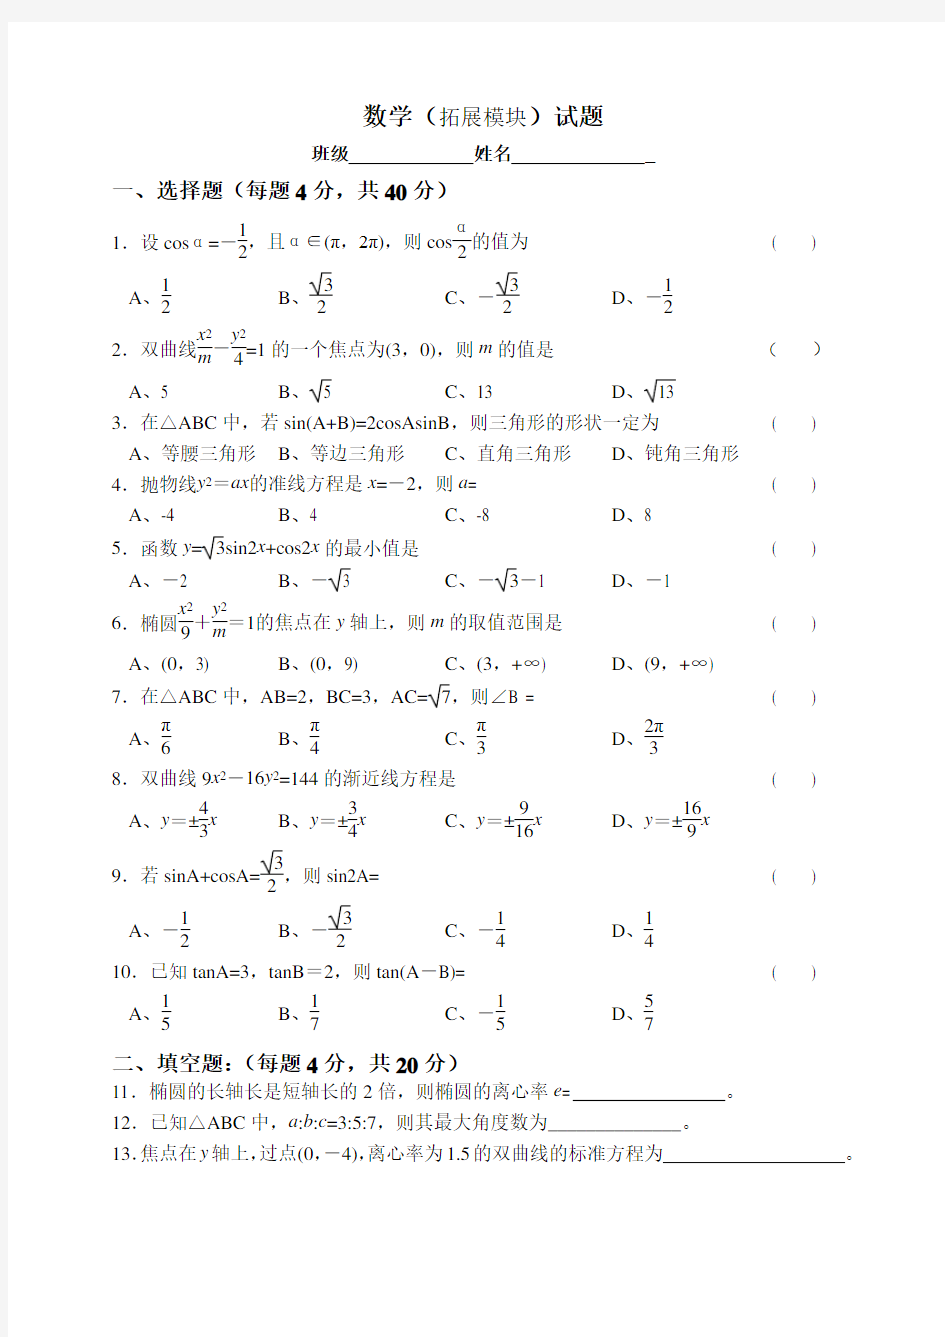 职高数学拓展模块期末考试试卷2(1)演示教学